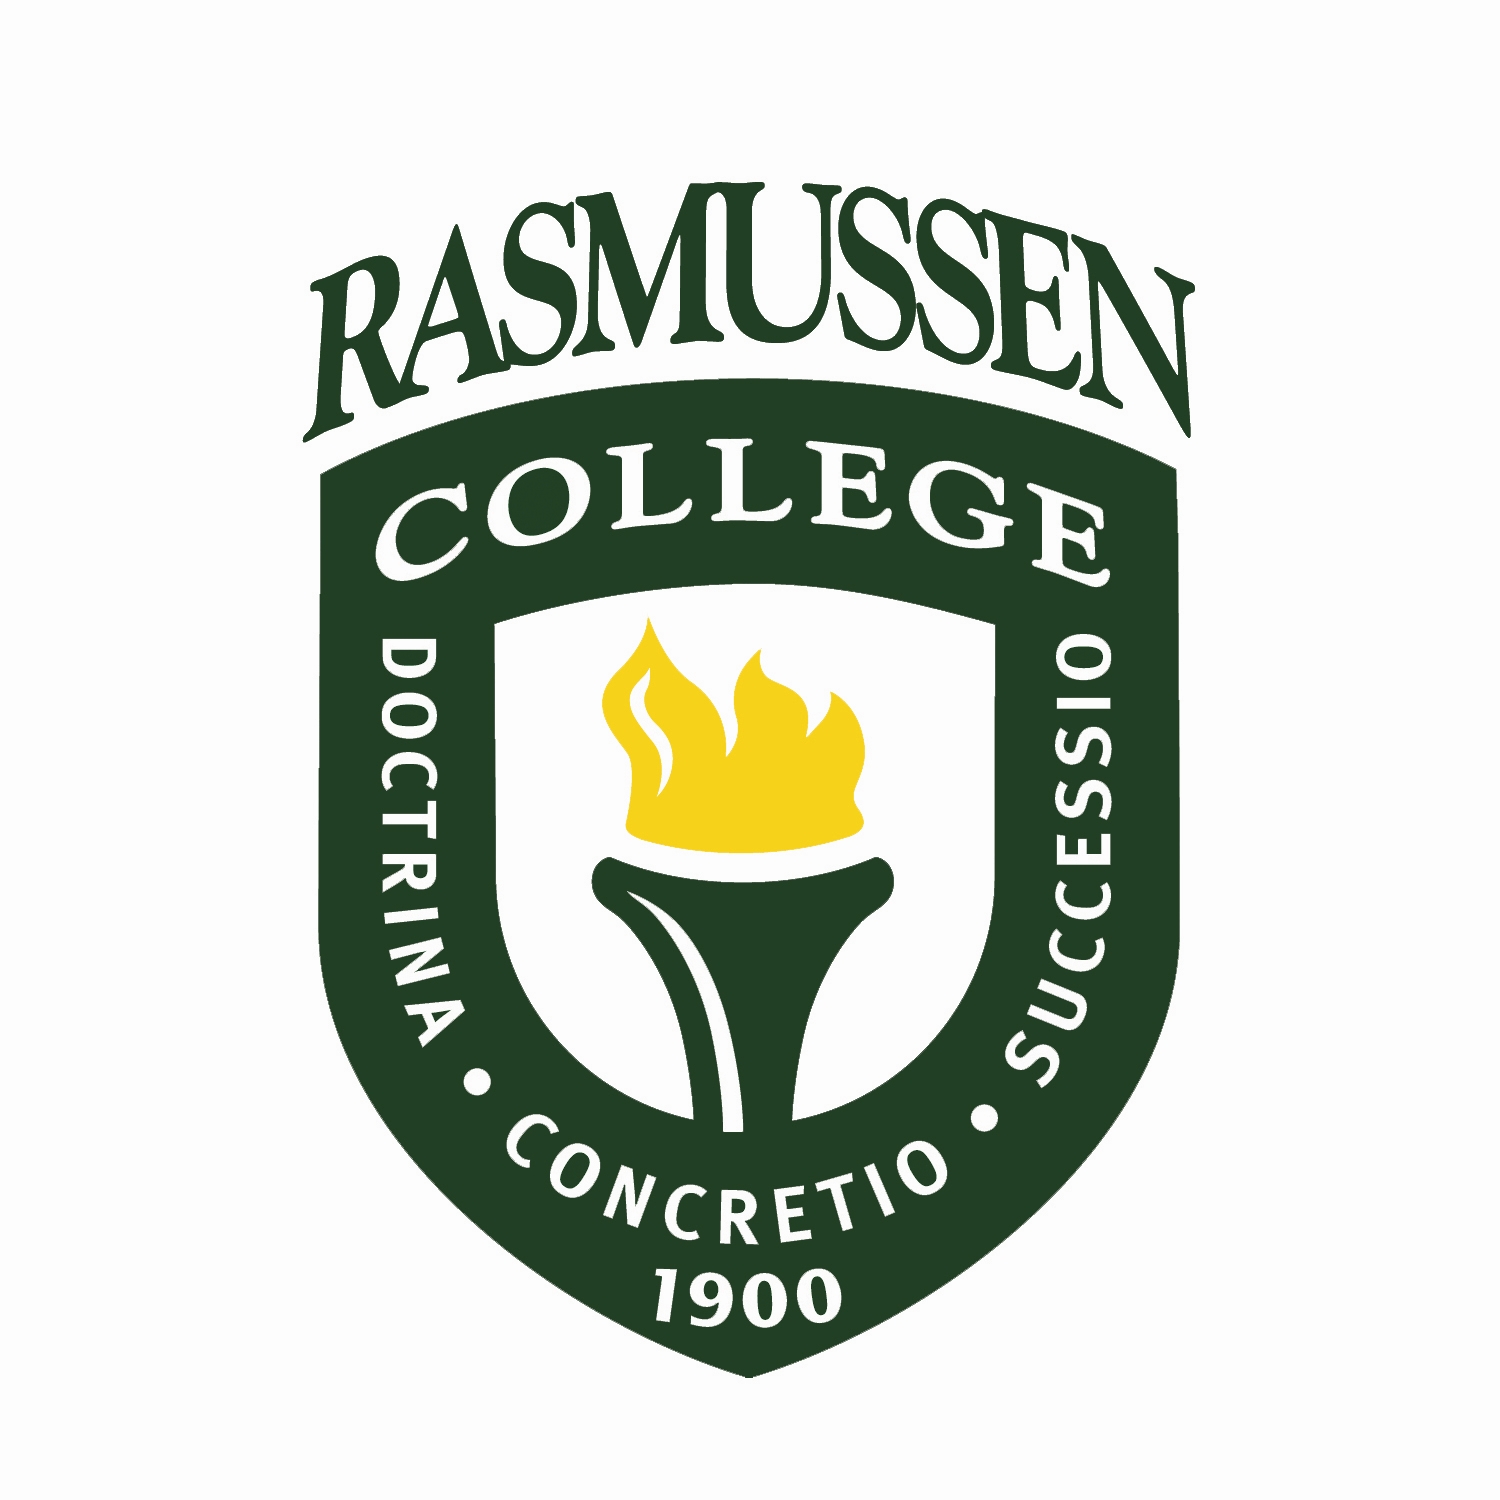 Rasmussen College 110